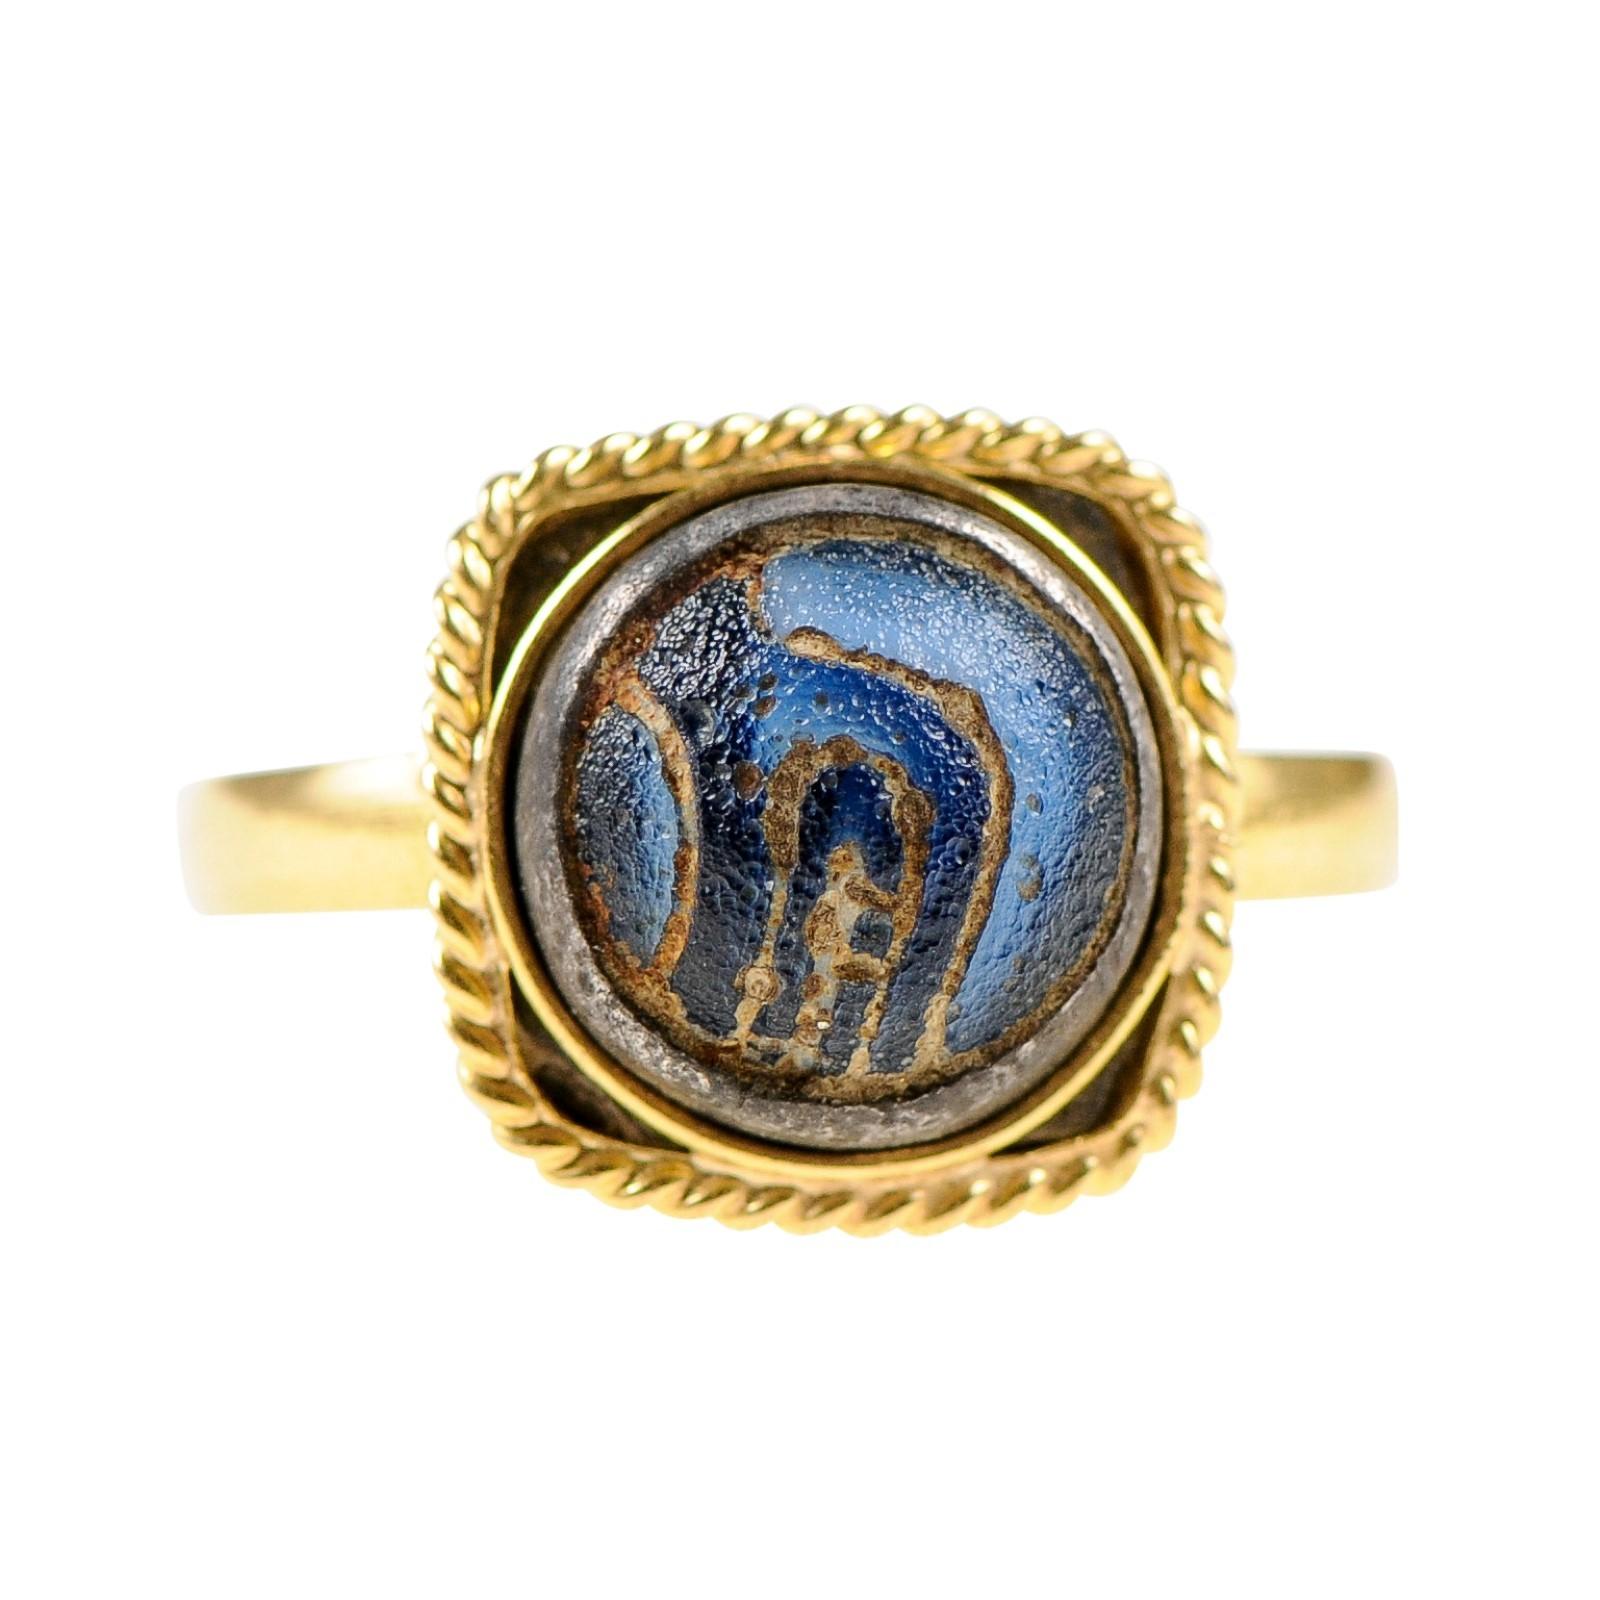 Une authentique mosaïque de verre romaine (du 4e au 6e siècle ADS) est montée sur mesure à l'intérieur d'un anneau en or 21 carats et d'une lunette quadrillée/rope. La coloration de ce verre romain antique est bleu cobalt/marine, avec de belles